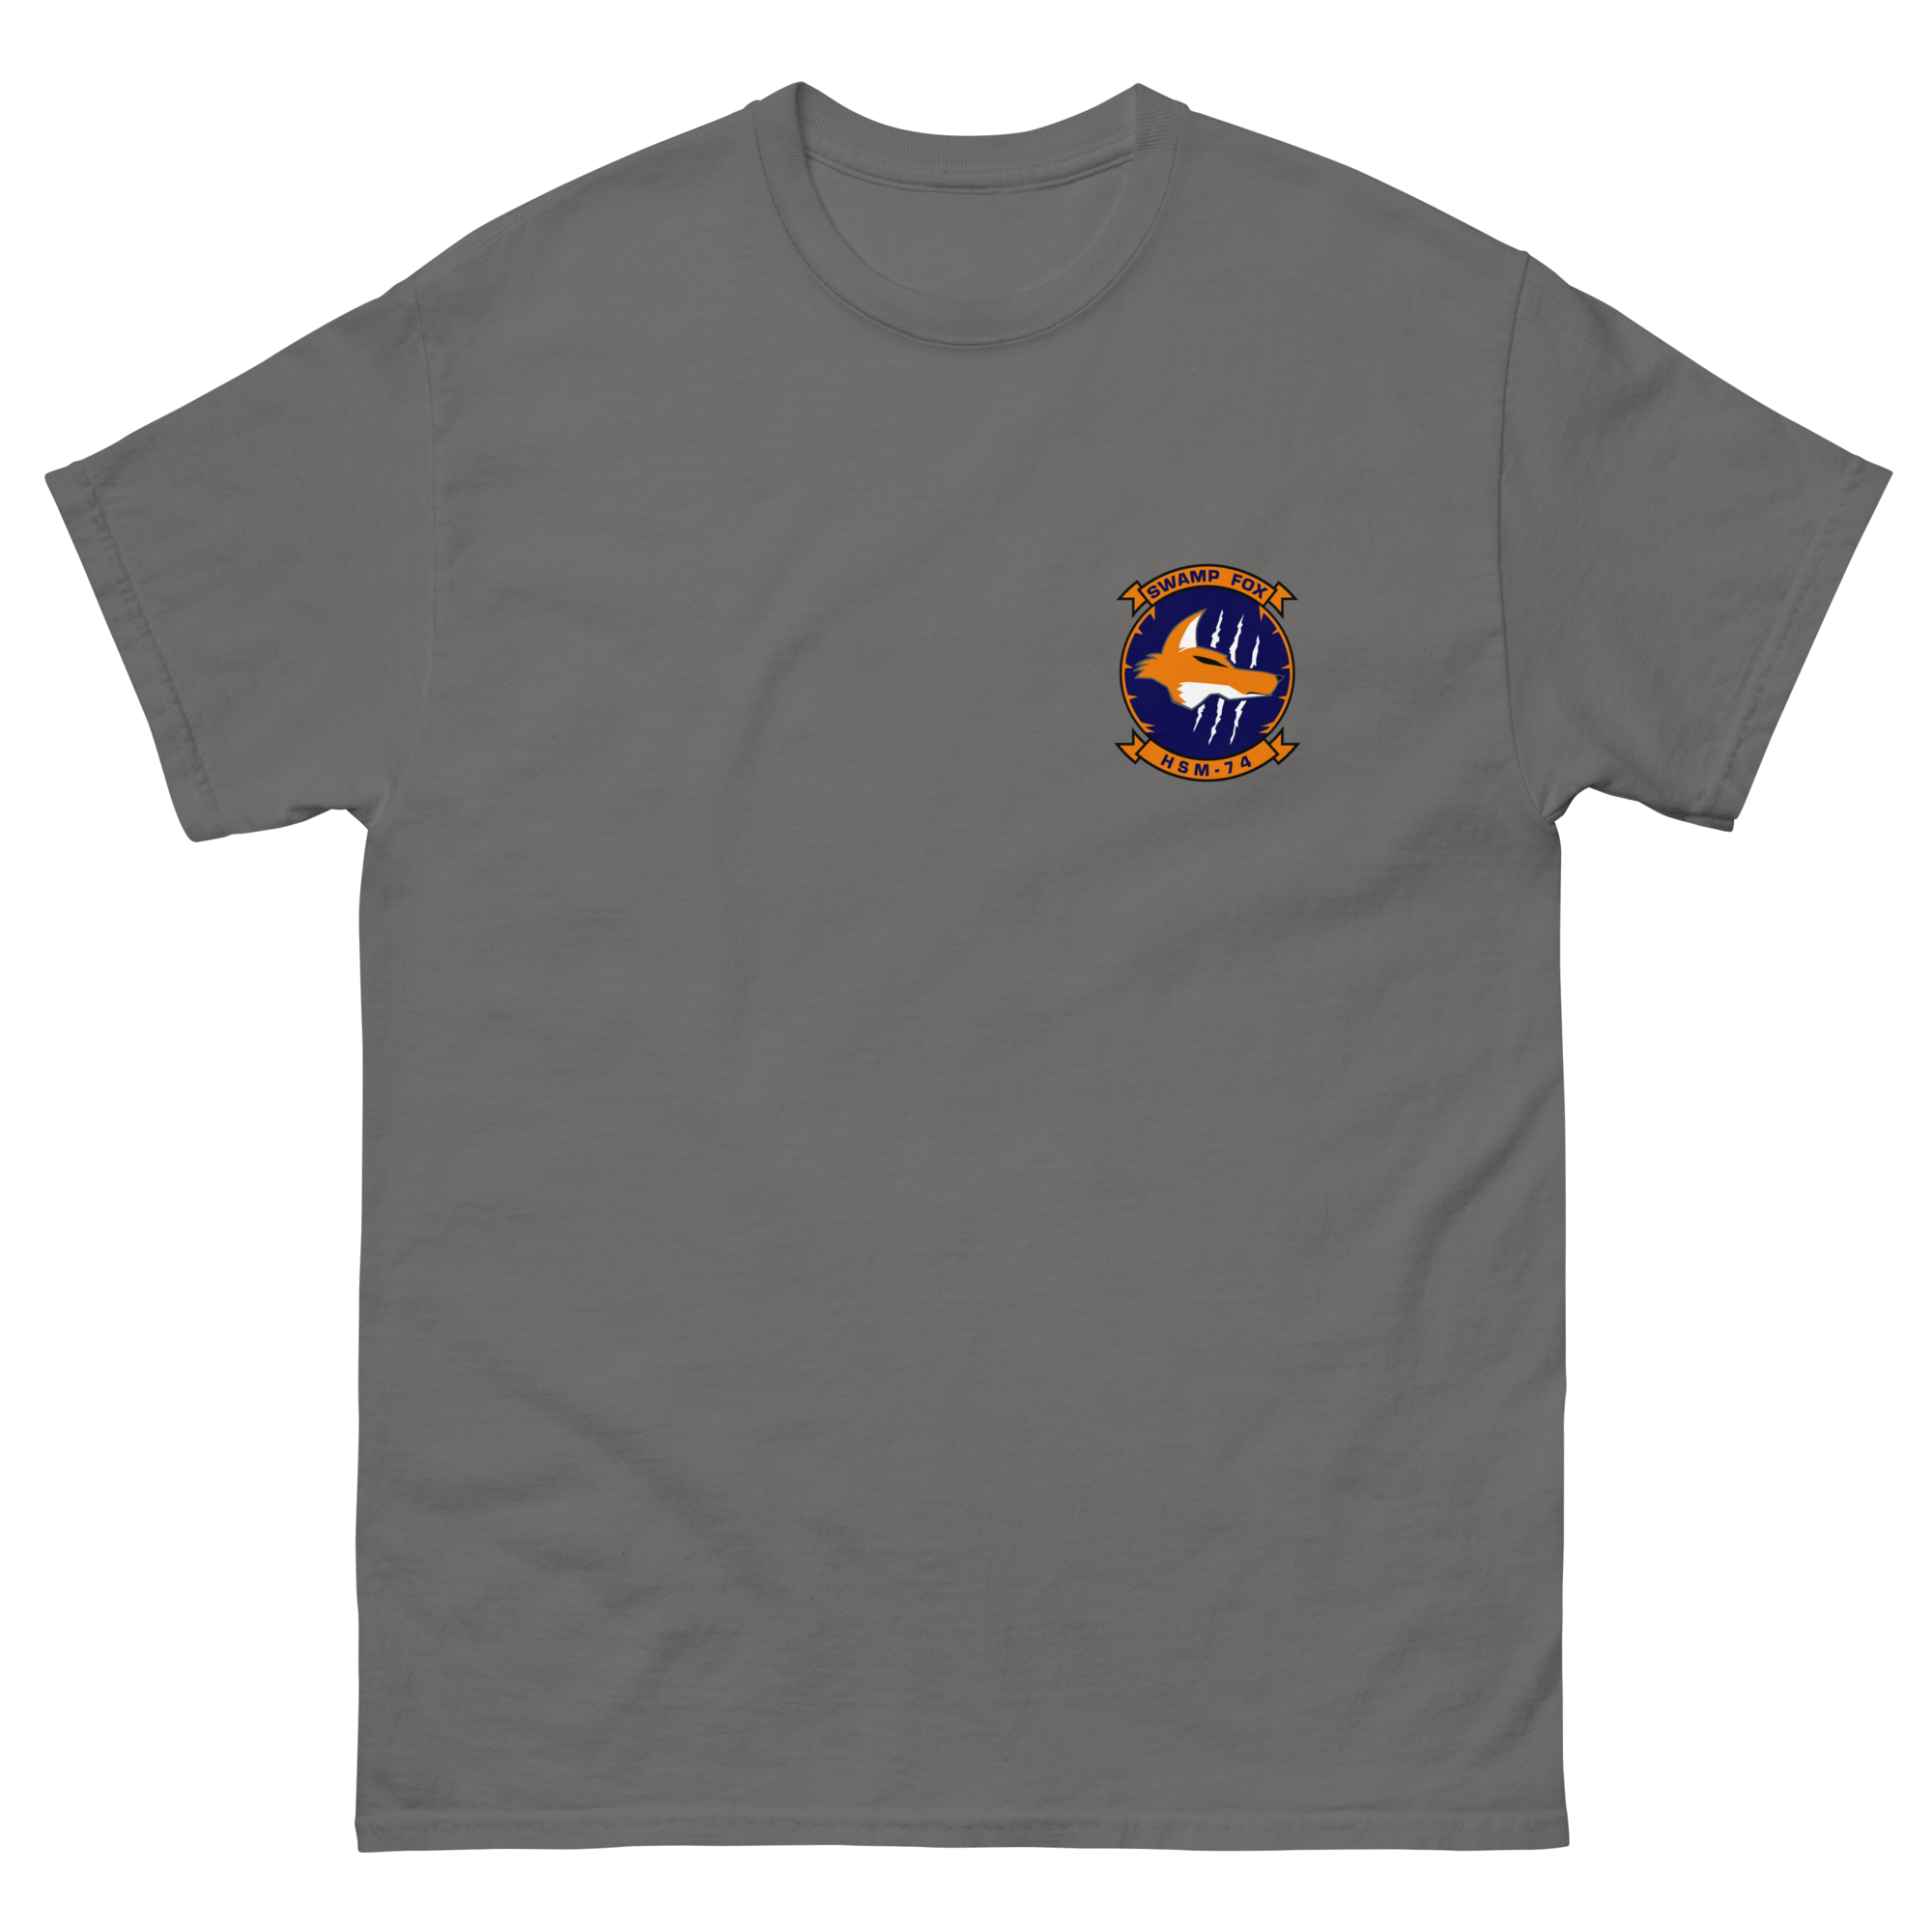 HSM-74 Swamp Foxes Squadron Crest Shirt